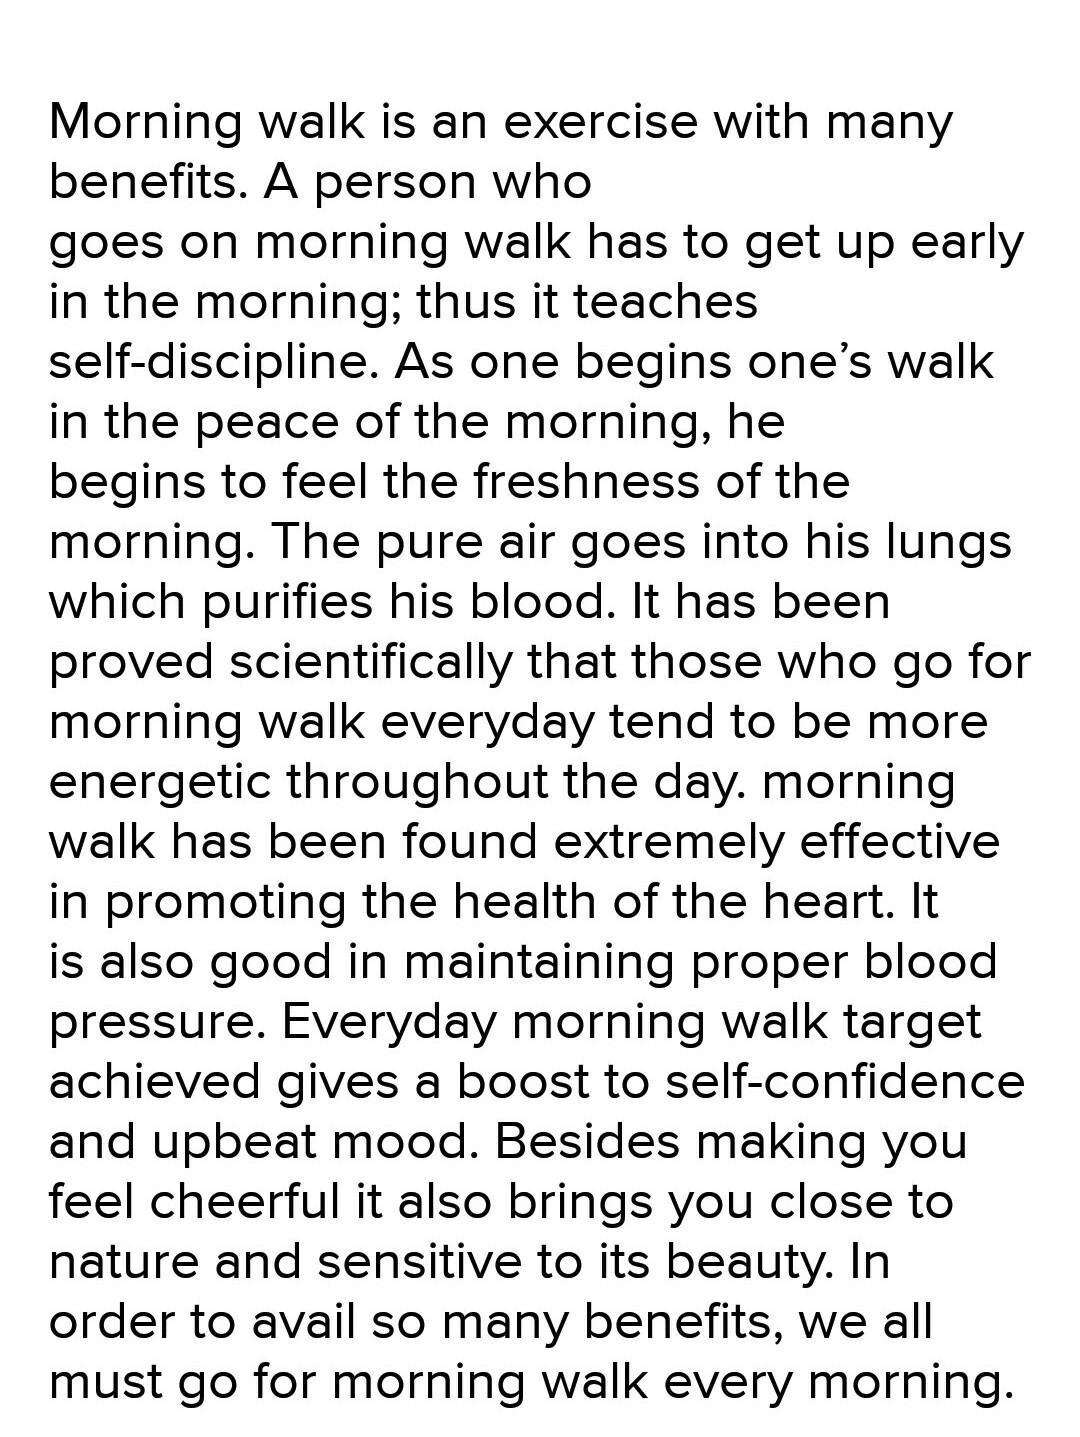 importance of morning walk essay